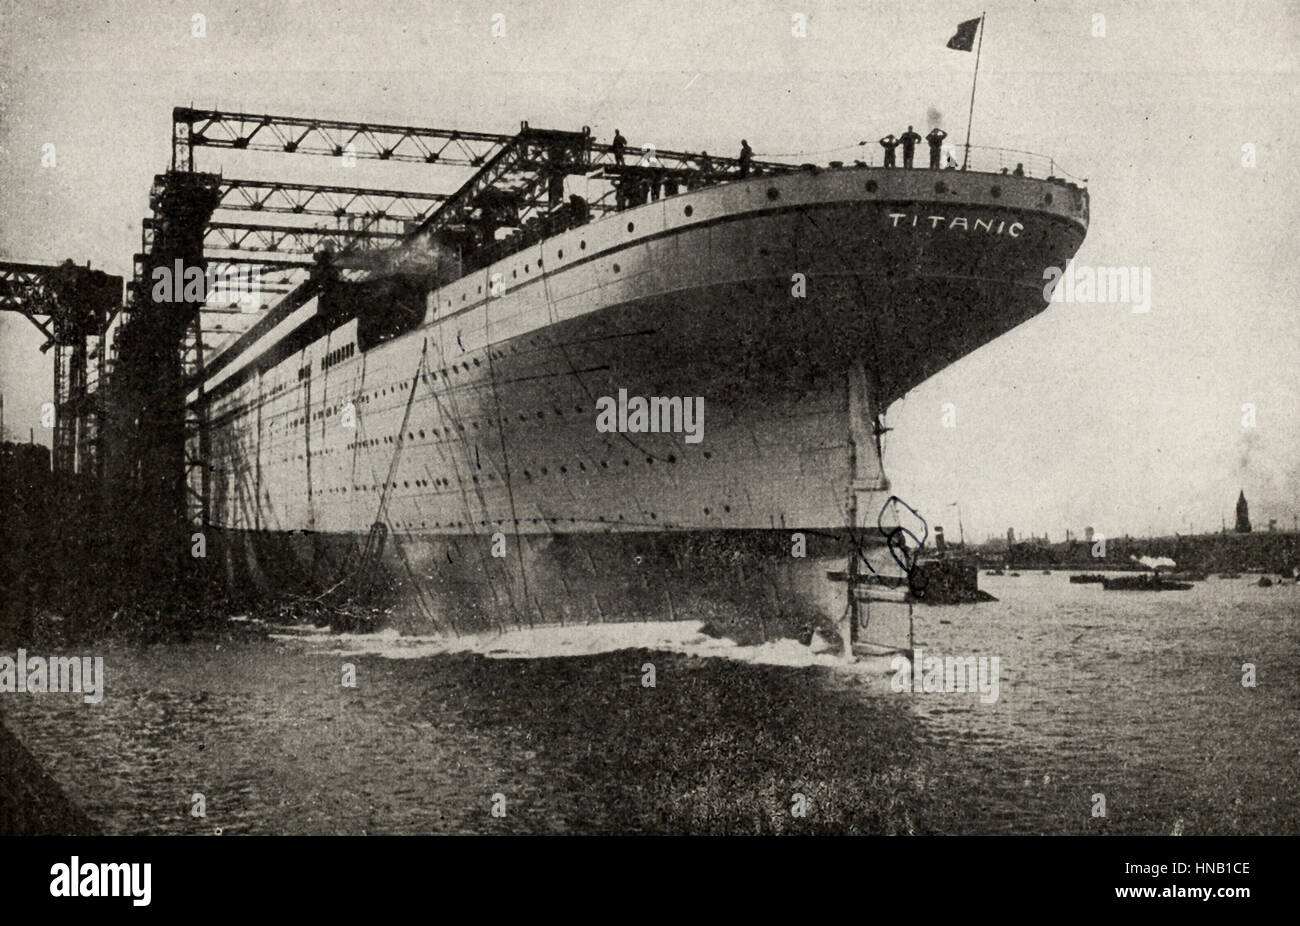 Le Titanic en construction. Cette photo a été présentée comme le Titanic, et dit clairement que beaucoup, mais il est très probablement c'est soeur de bateau, RMS Olympic. Les navires sont souvent pris l'un pour l'autre, mais cette photo aurait dû être modifié avant qu'il a été publié il y a cent ans. Banque D'Images